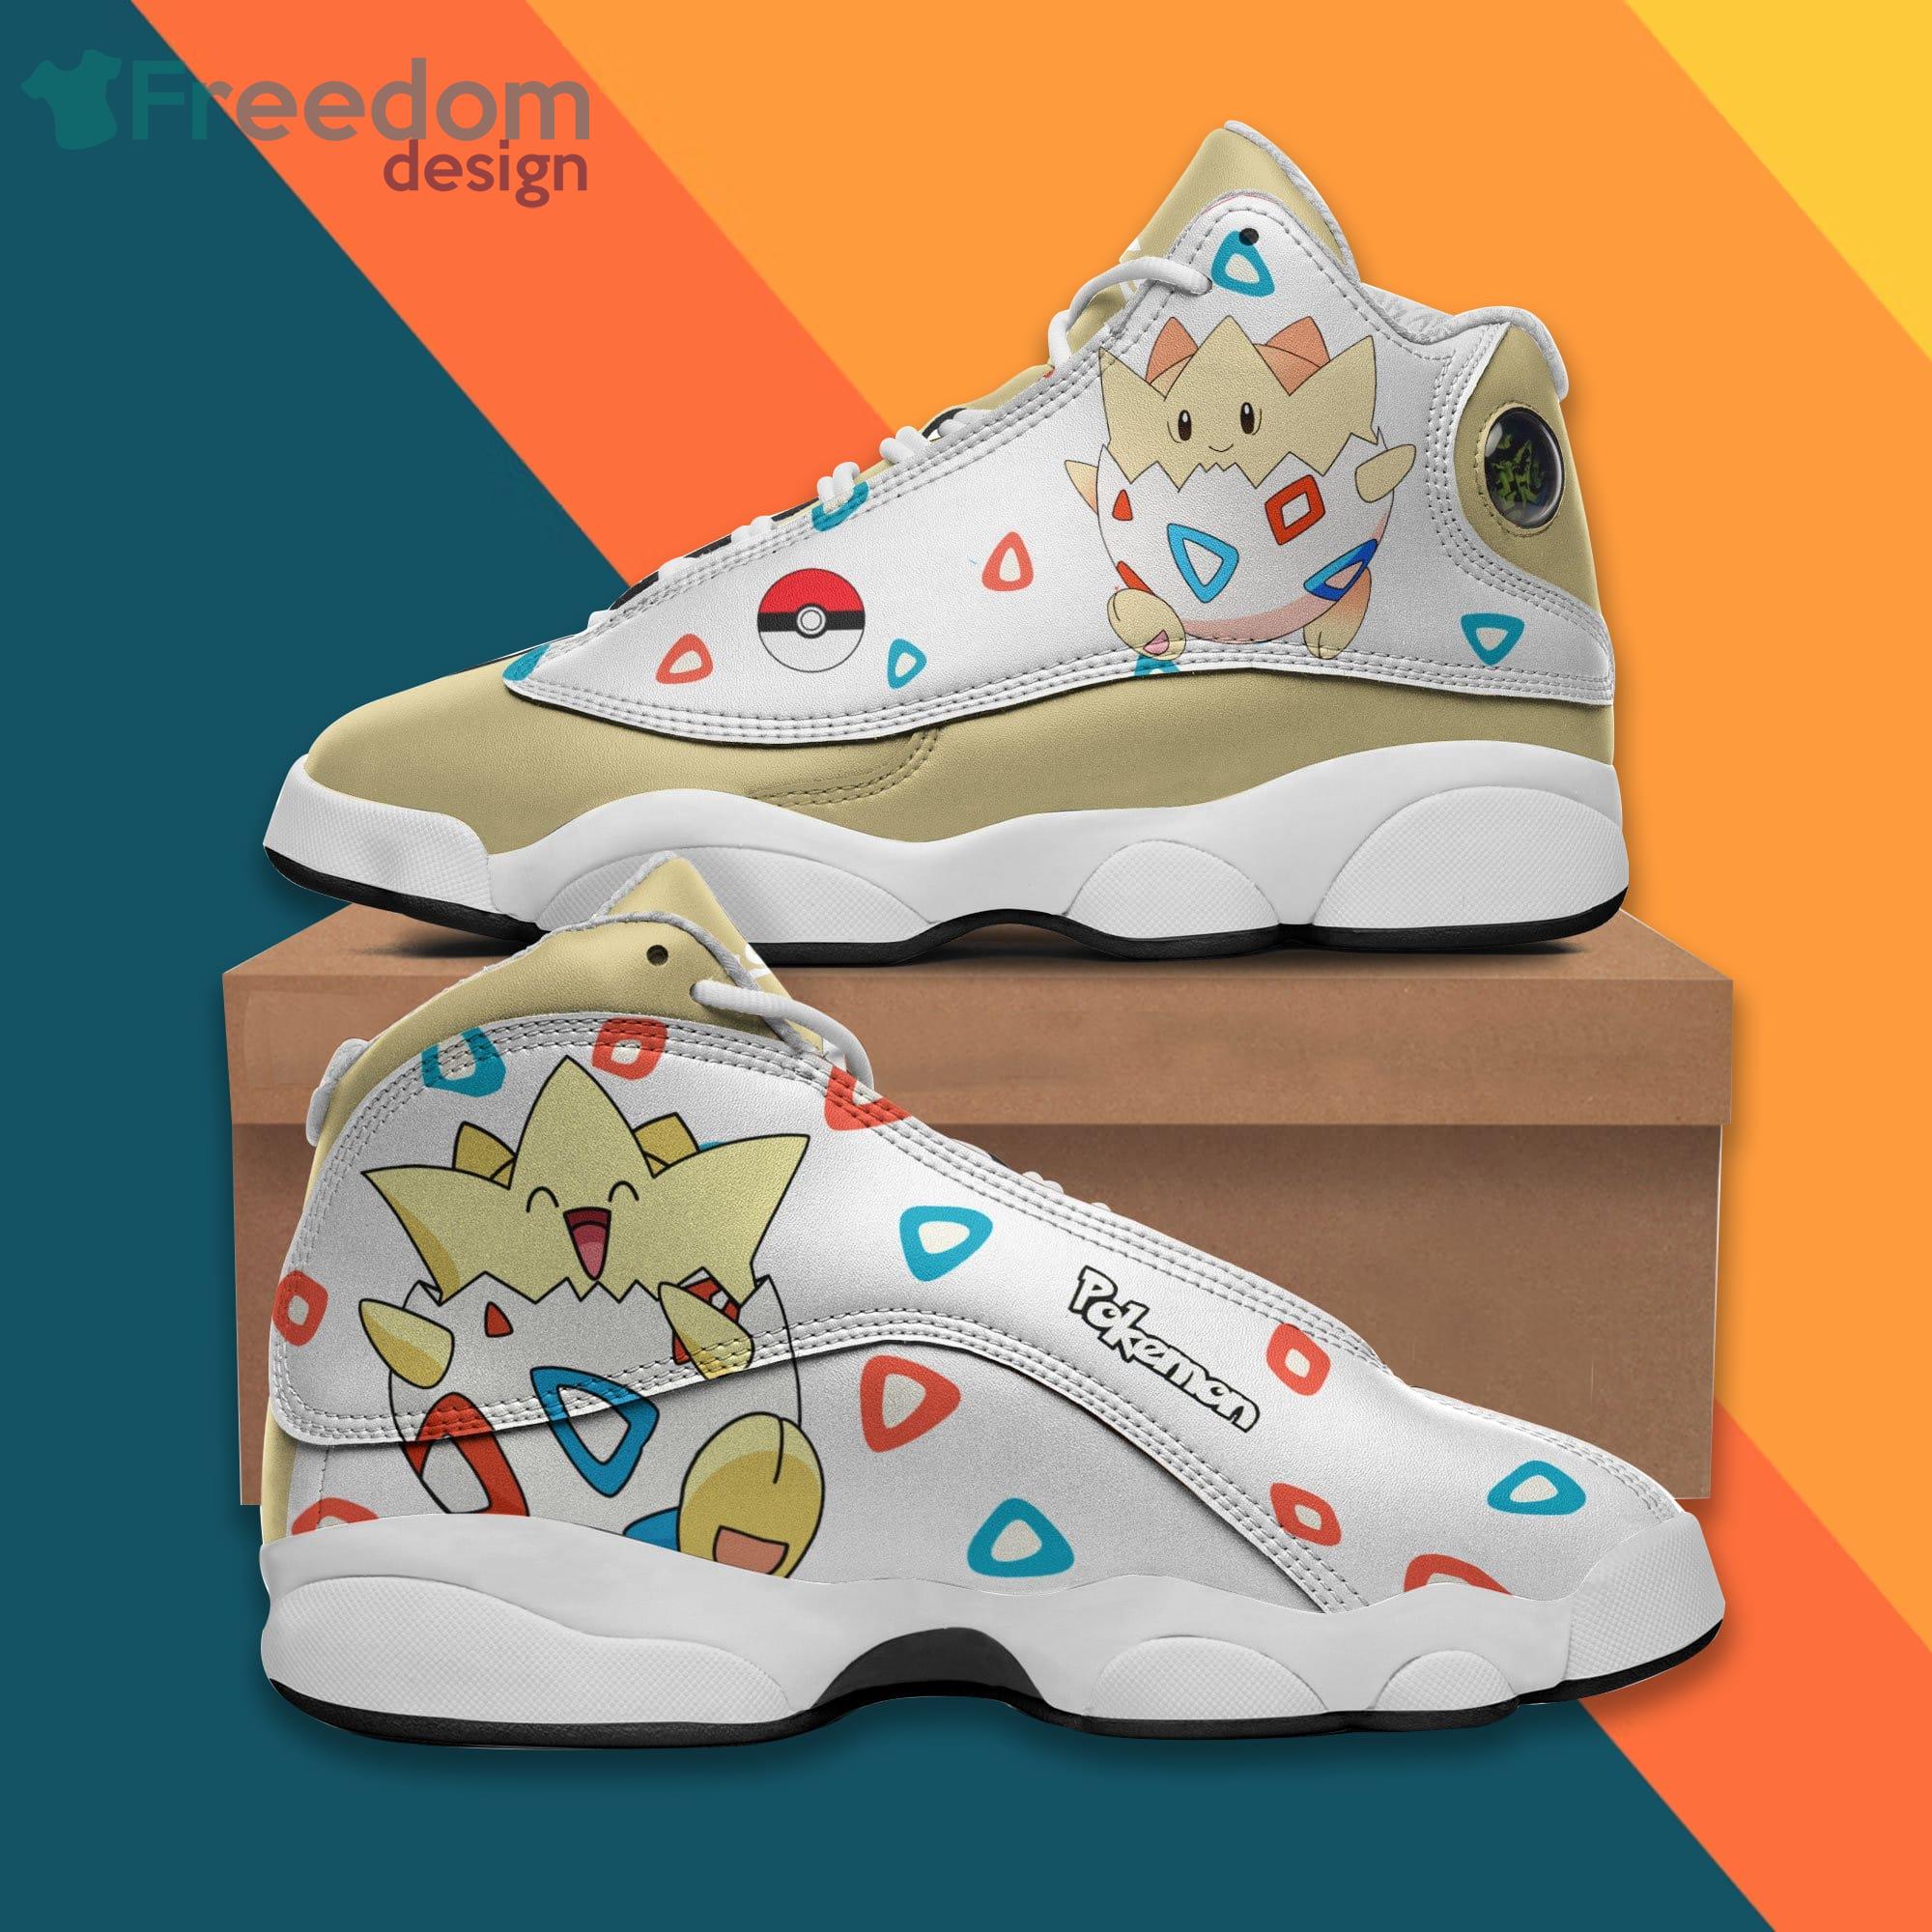 Cool Pokemon Jordan Boğazlı Sneaker Çocuk Spor Ayakkabı